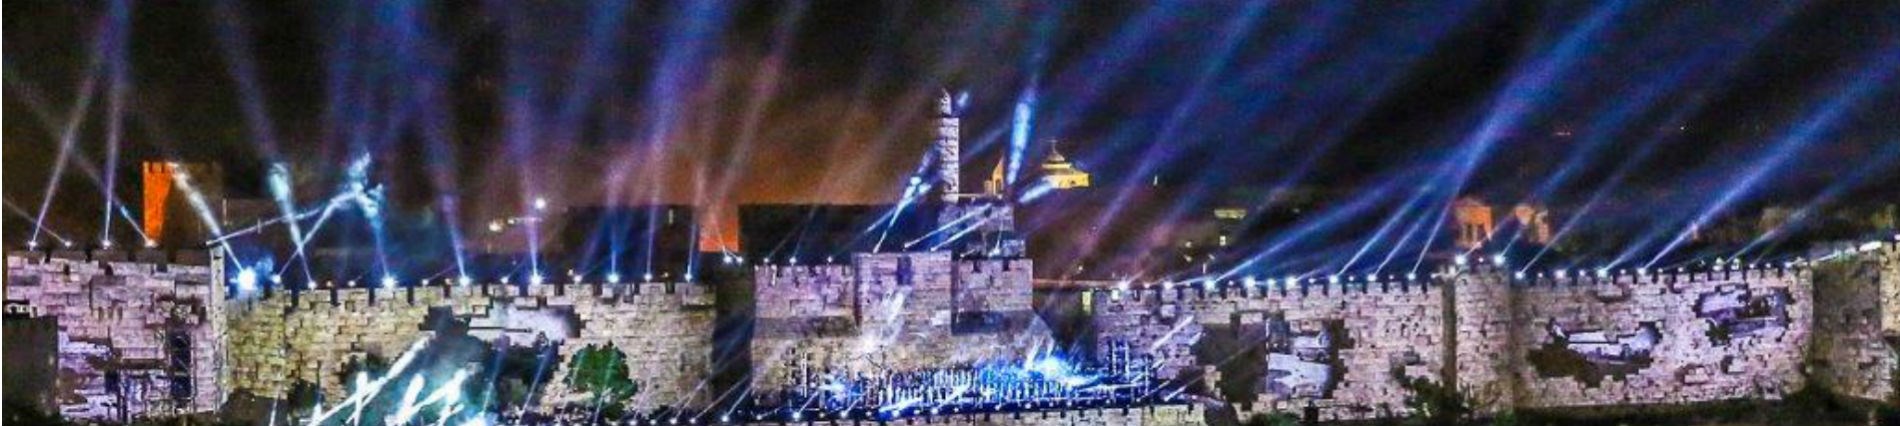 פסטיבל האור ירושלים